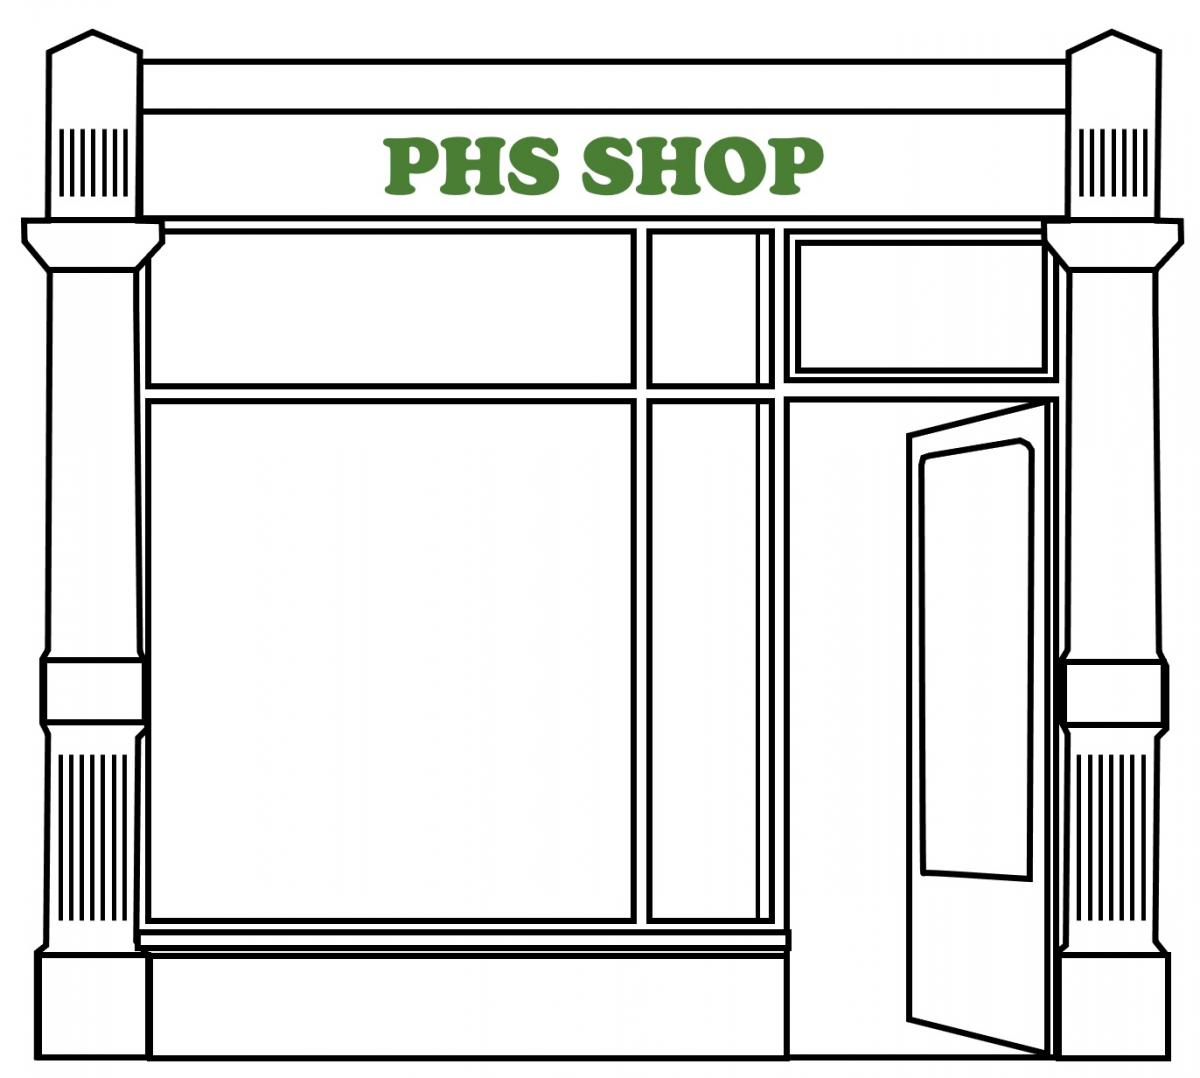 PHS Shop